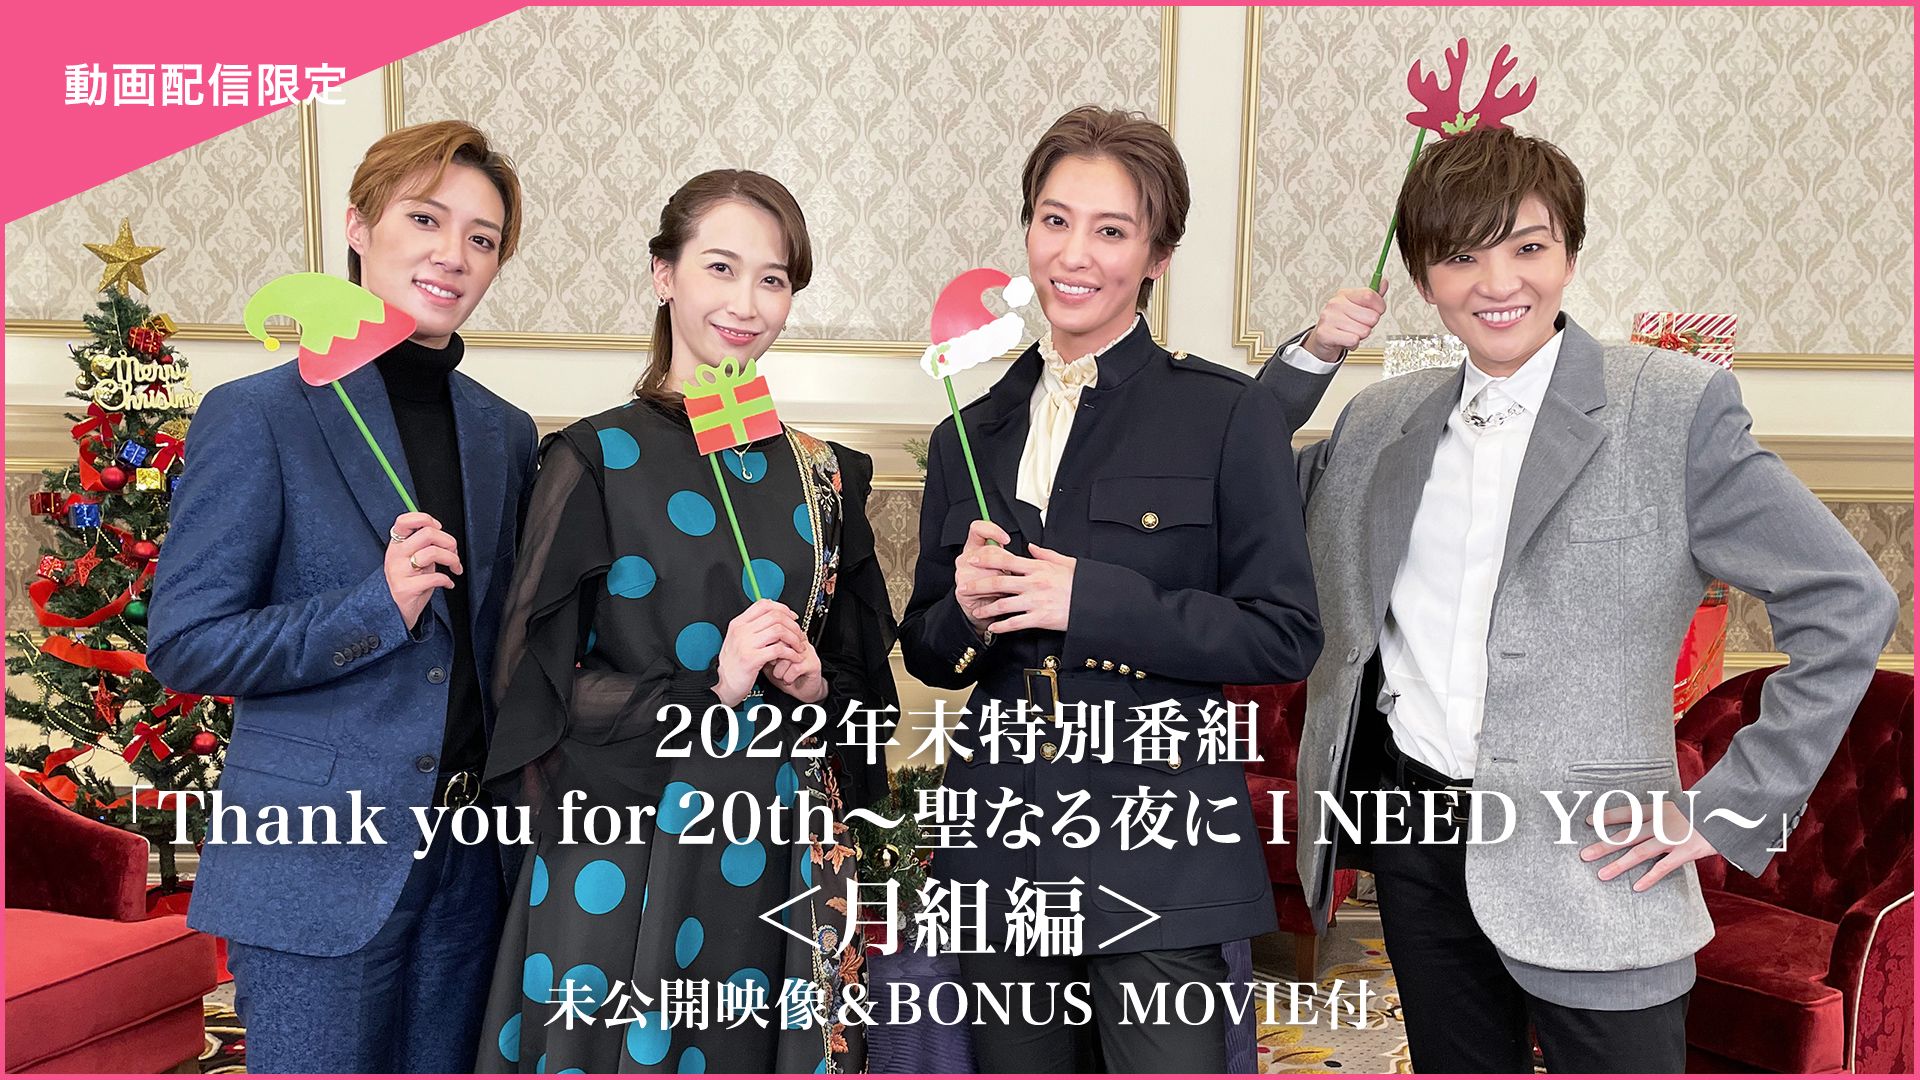 2022年末特別番組「Thank you for 20th〜聖なる夜に I NEED YOU〜」<月組編>未公開映像&BONUS MOVIE付